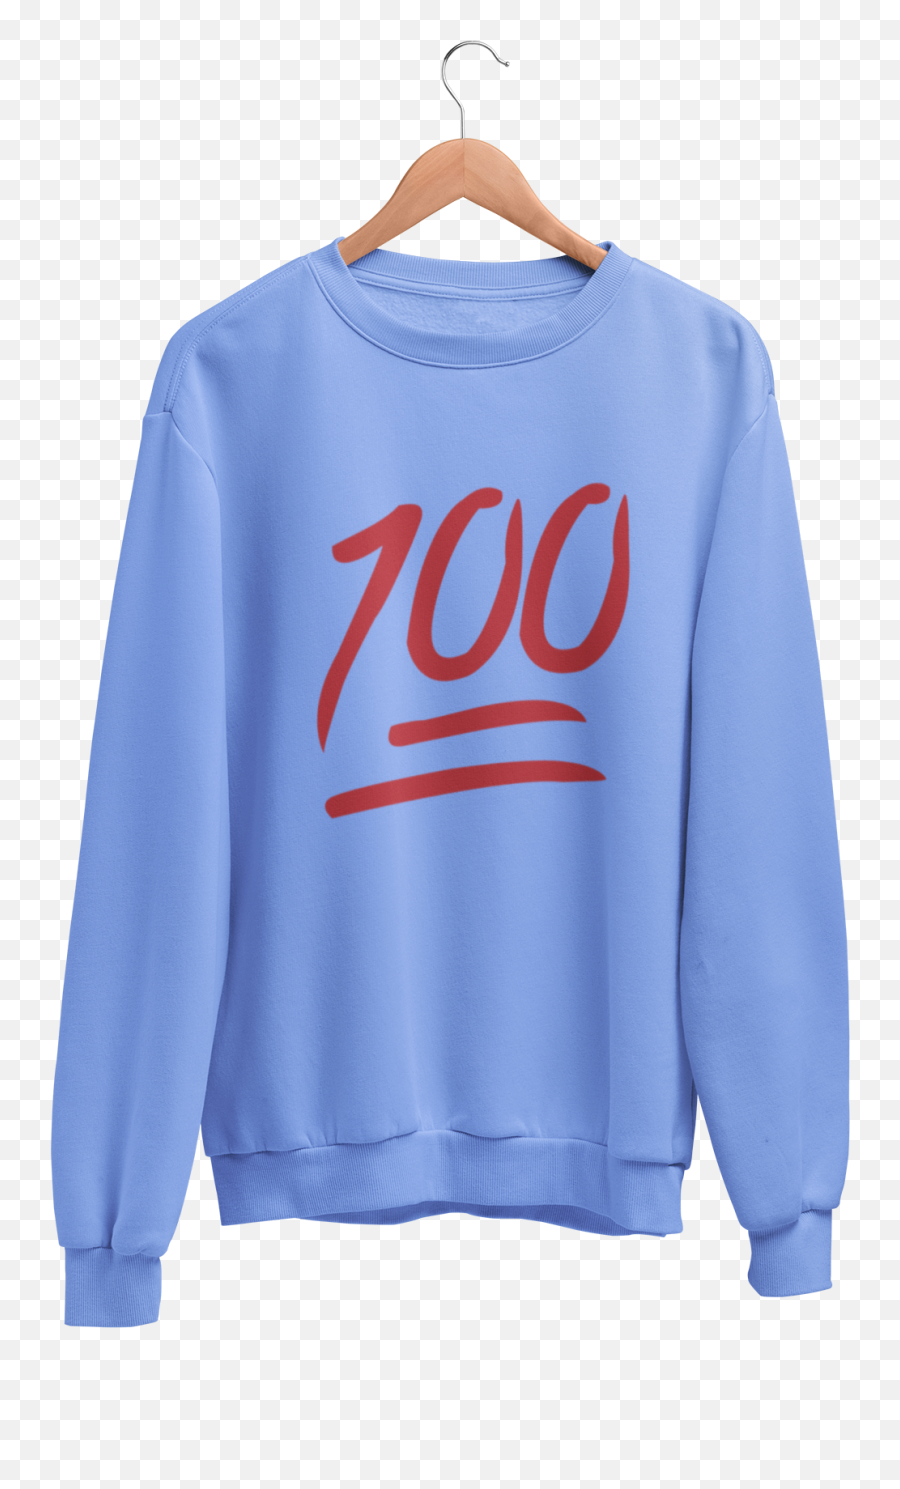 100 - Unisex Long Sleeve Sweatshirt My Site 1 Emoji,100 Emoji